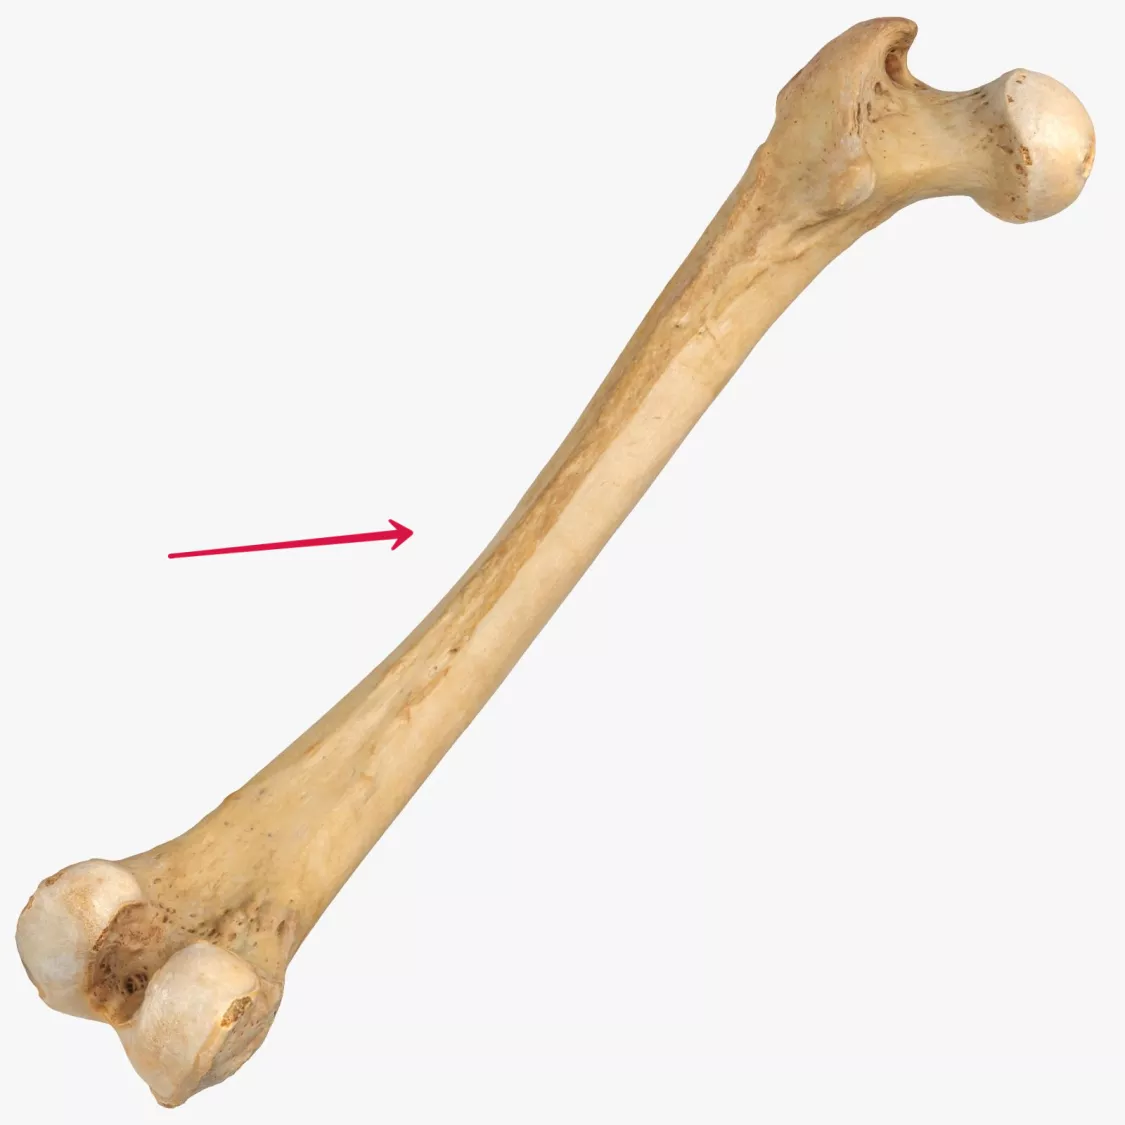 股骨图片